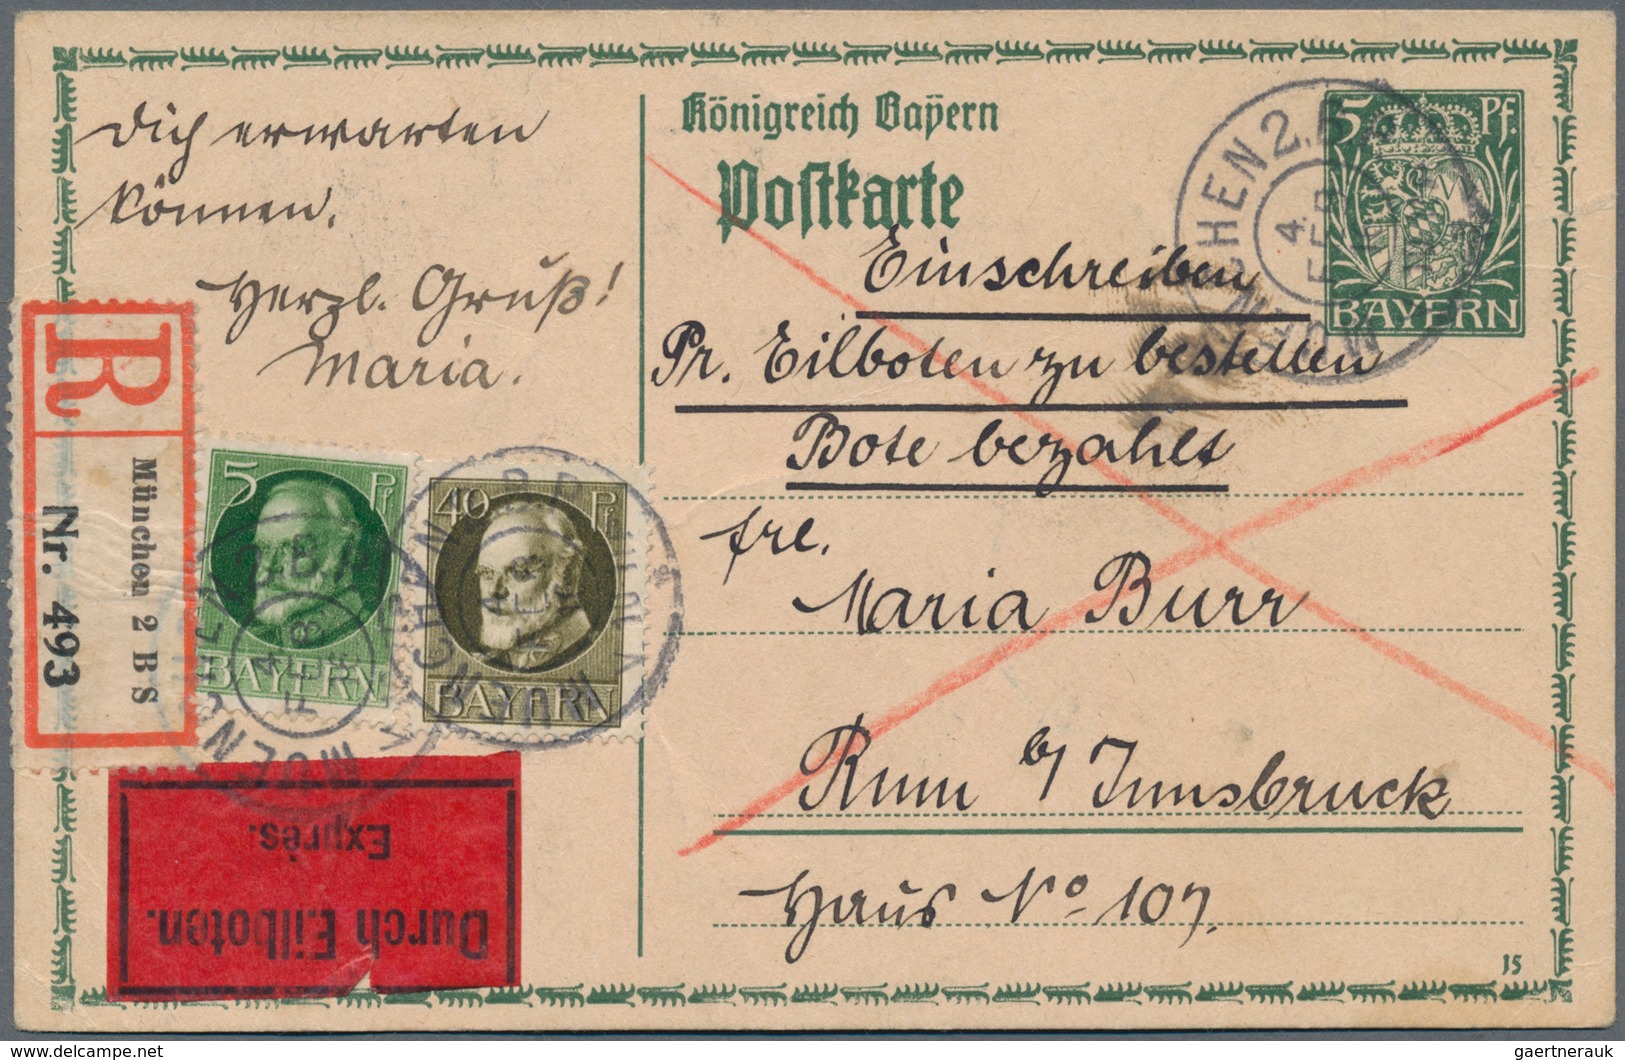 Altdeutschland: 1860 ab ca., gehaltvoller Sammlungsbestand mit über 40 Belegen, dabei Württemberg 3